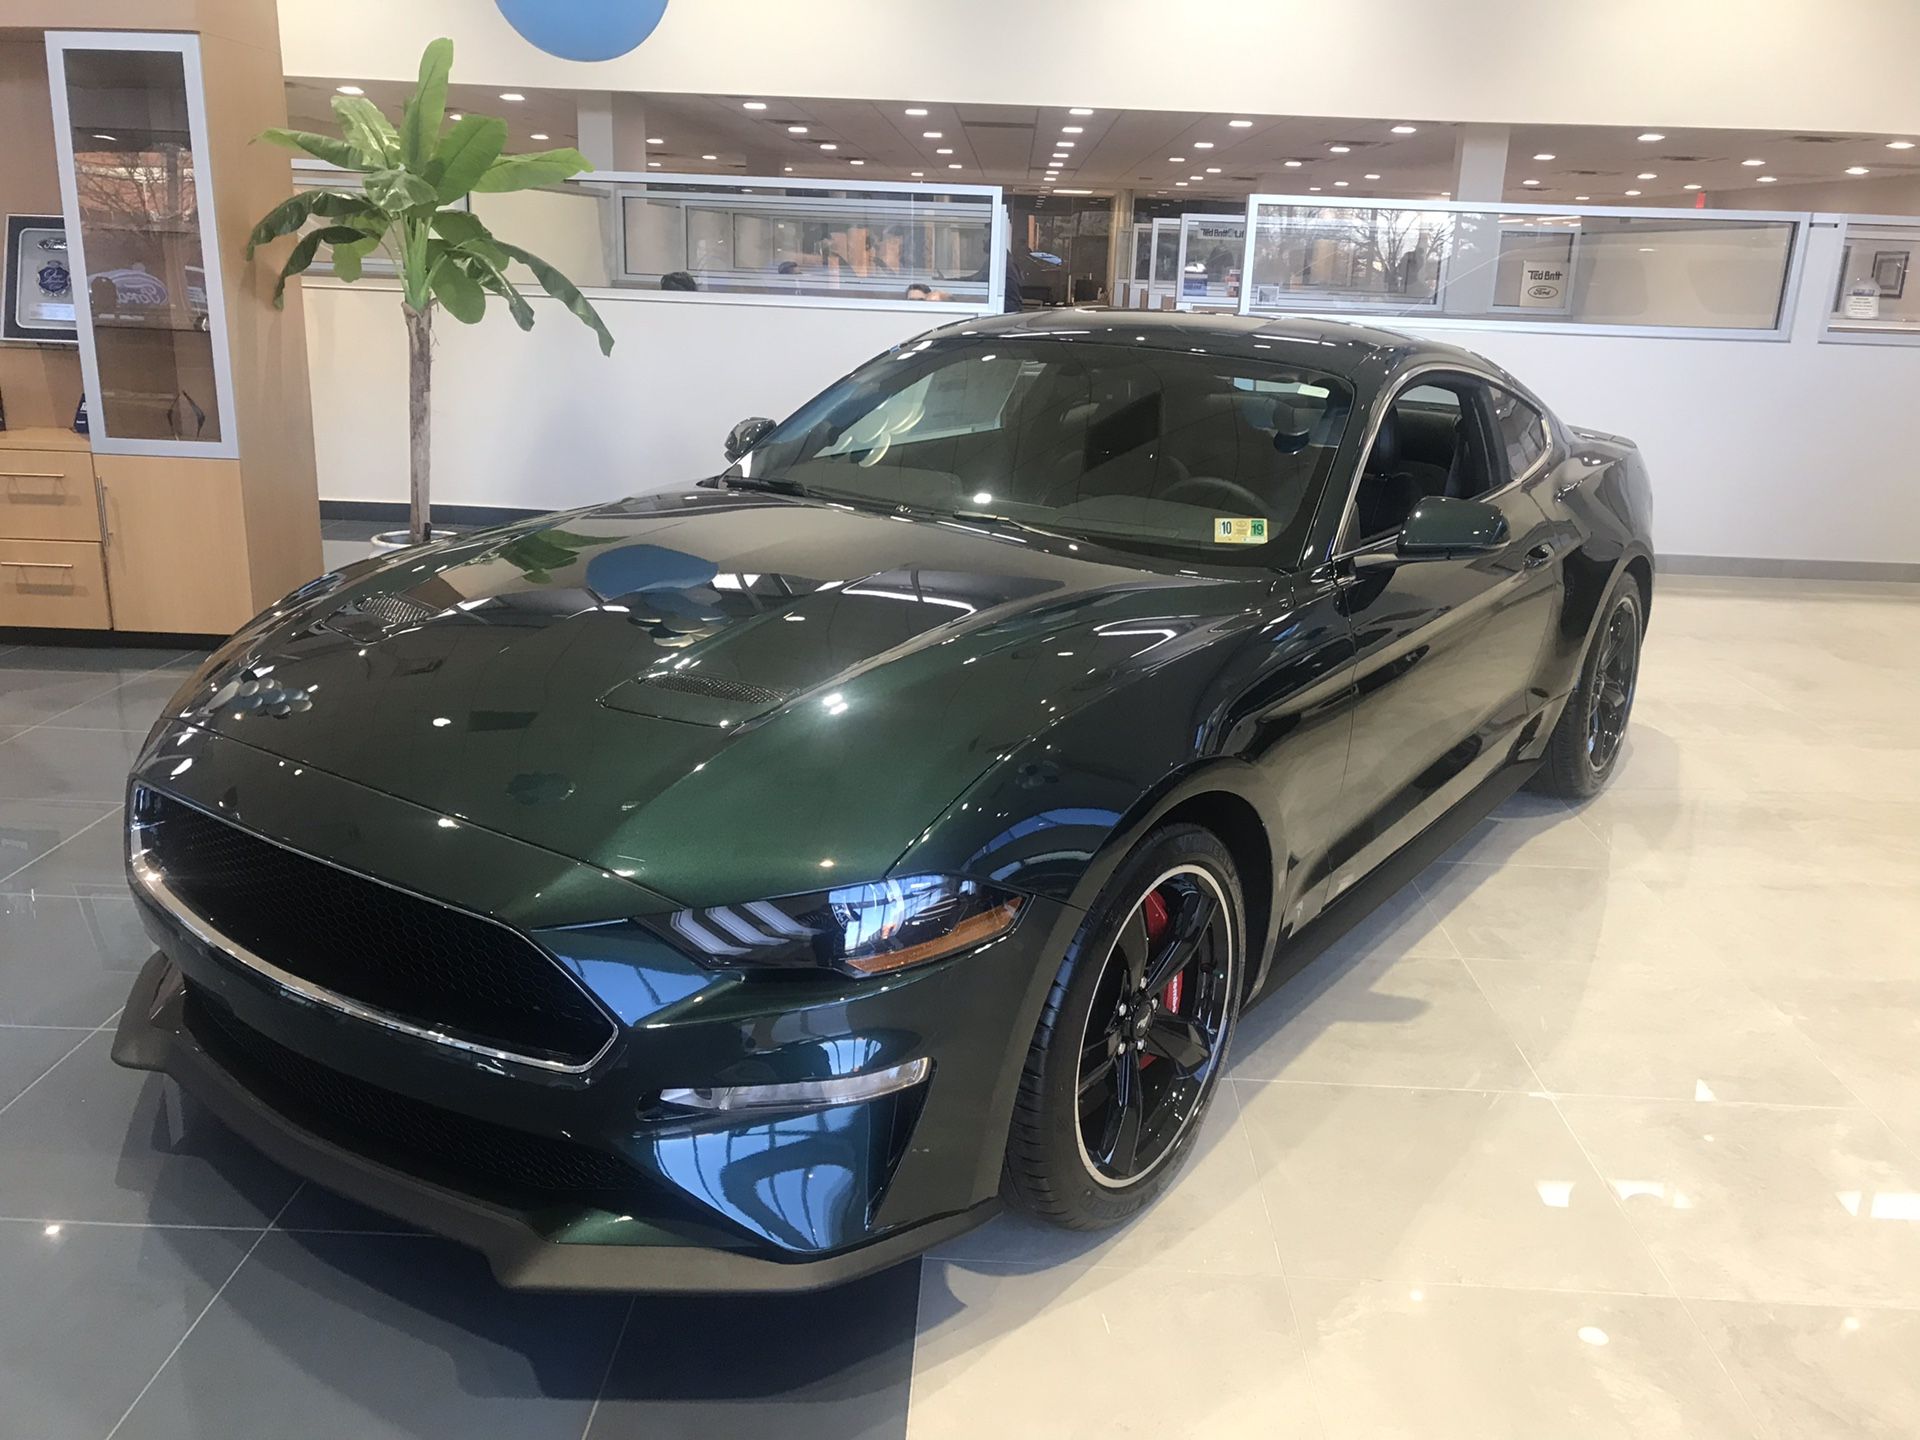 2019 Ford Mustang Bullitt for $51,260!